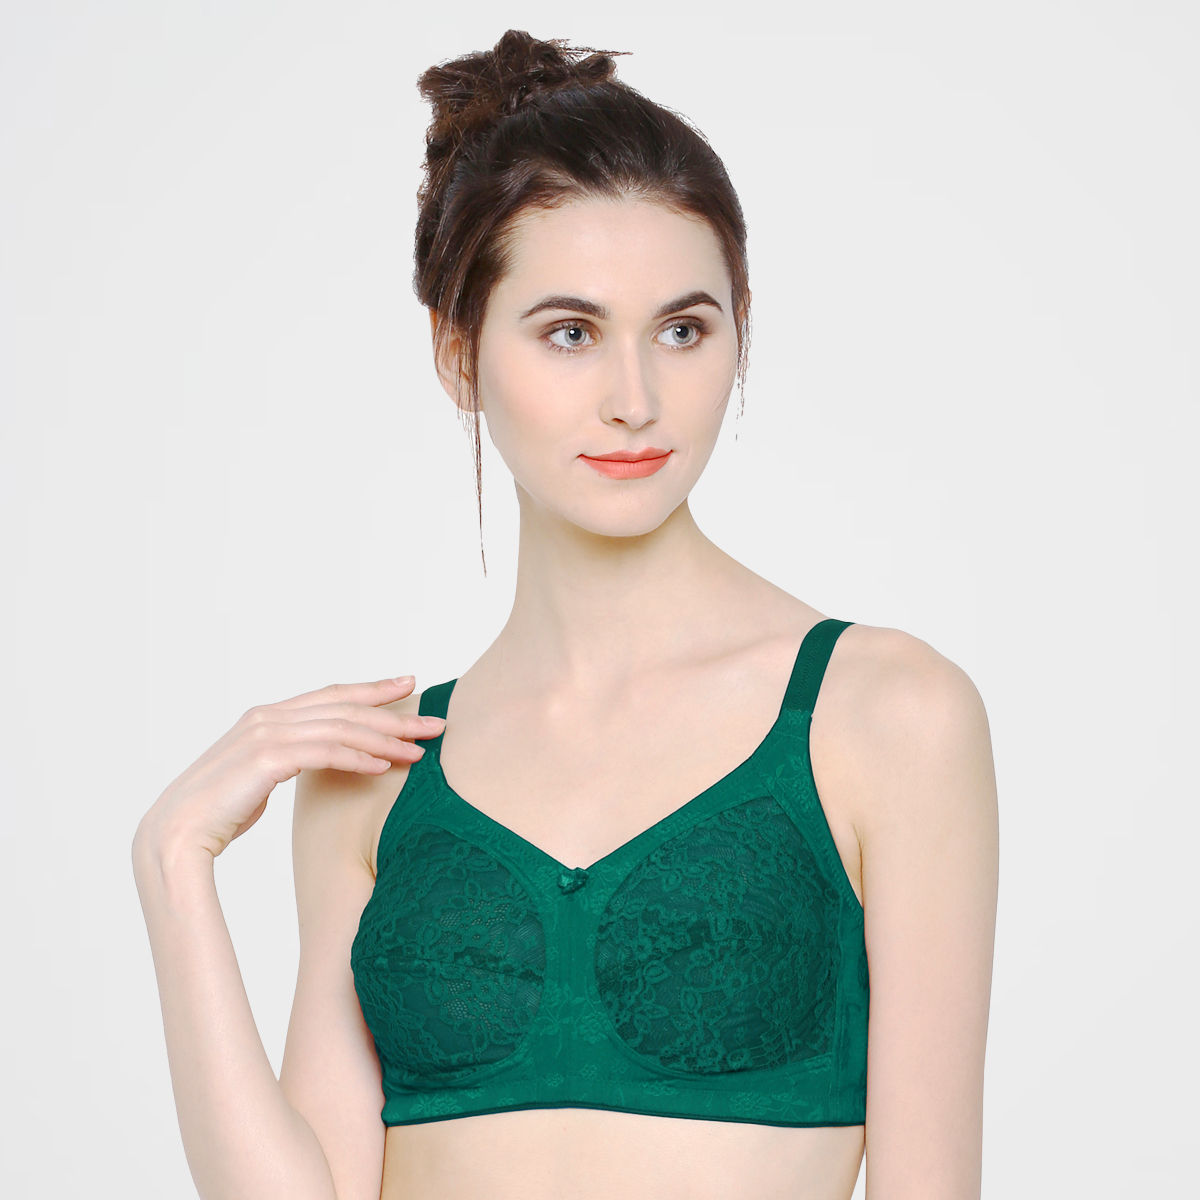 Sonari Felina Women's Fancy Net Bra - Green (36D)